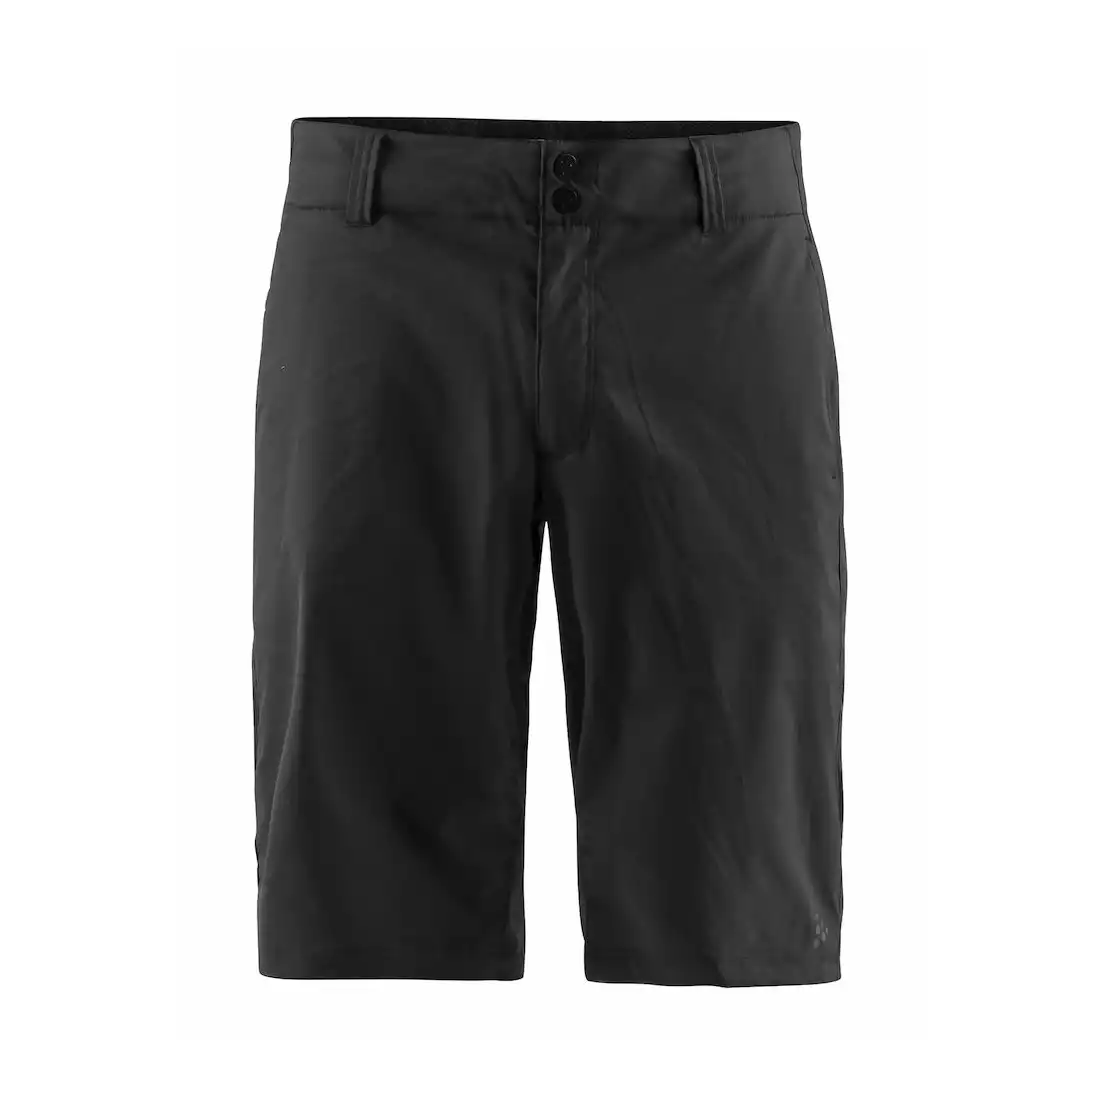 CRAFT Ride Shorts 1905013-9999 - męskie szorty rowerowe, czarne